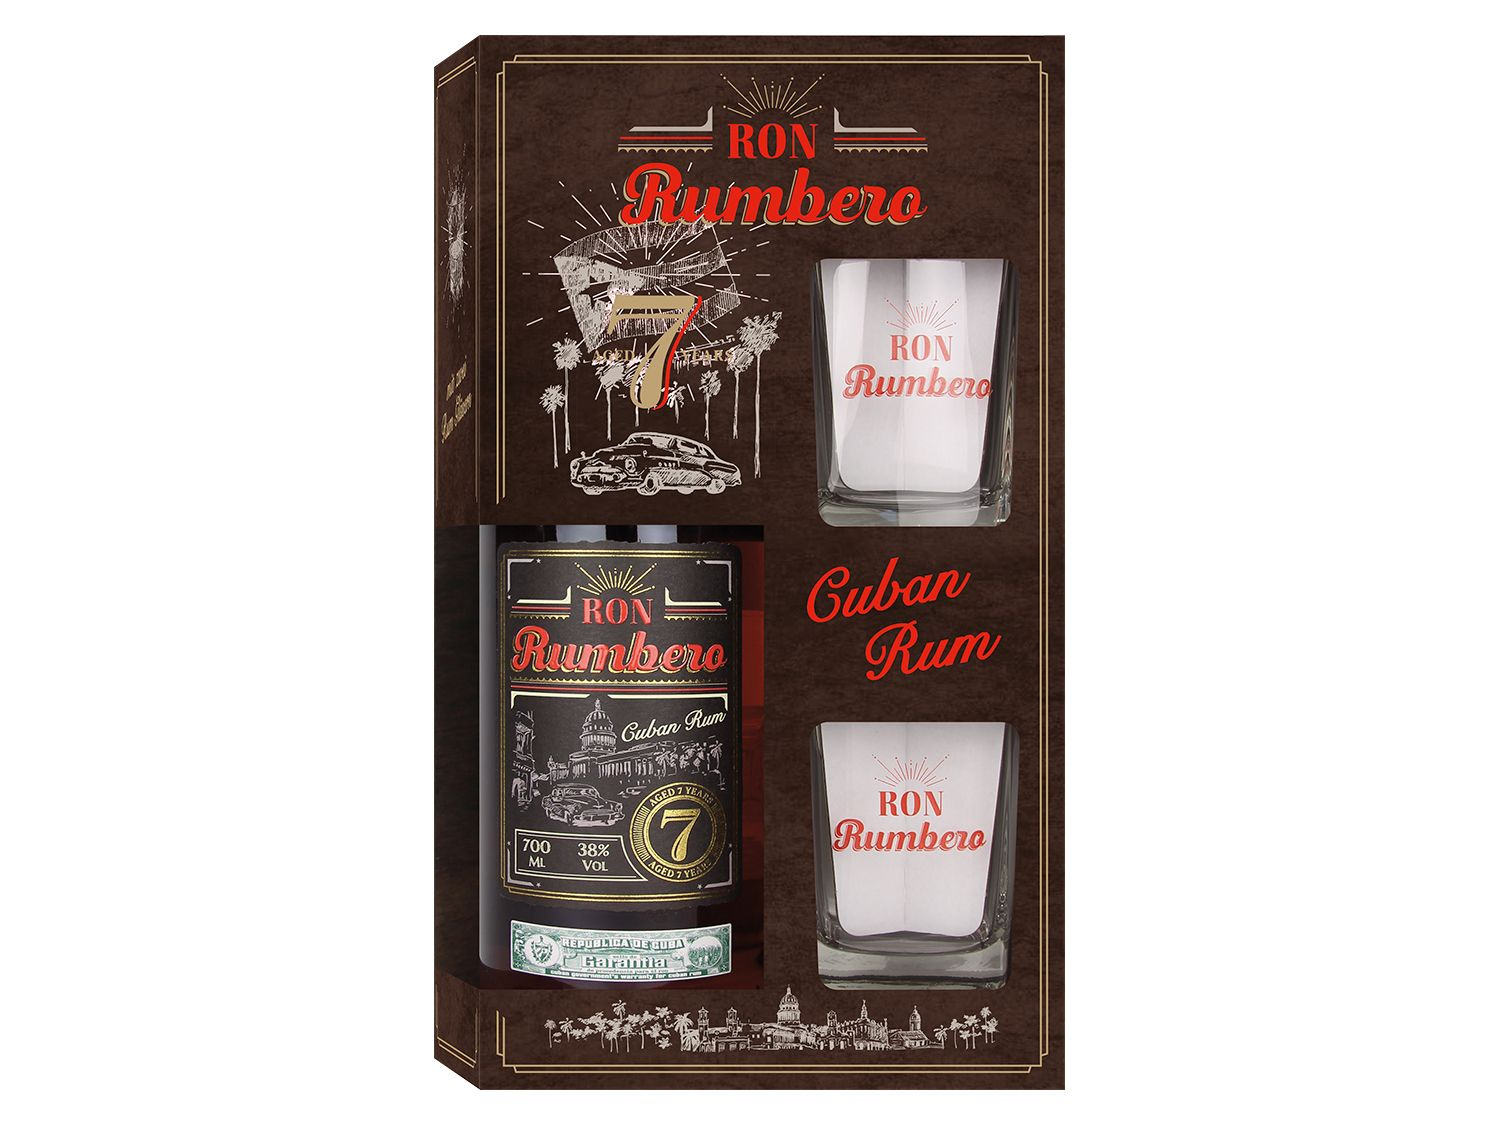 Vol | mit 2 38% Rum LIDL 7 Jahre Ron Rumbero Gläsern